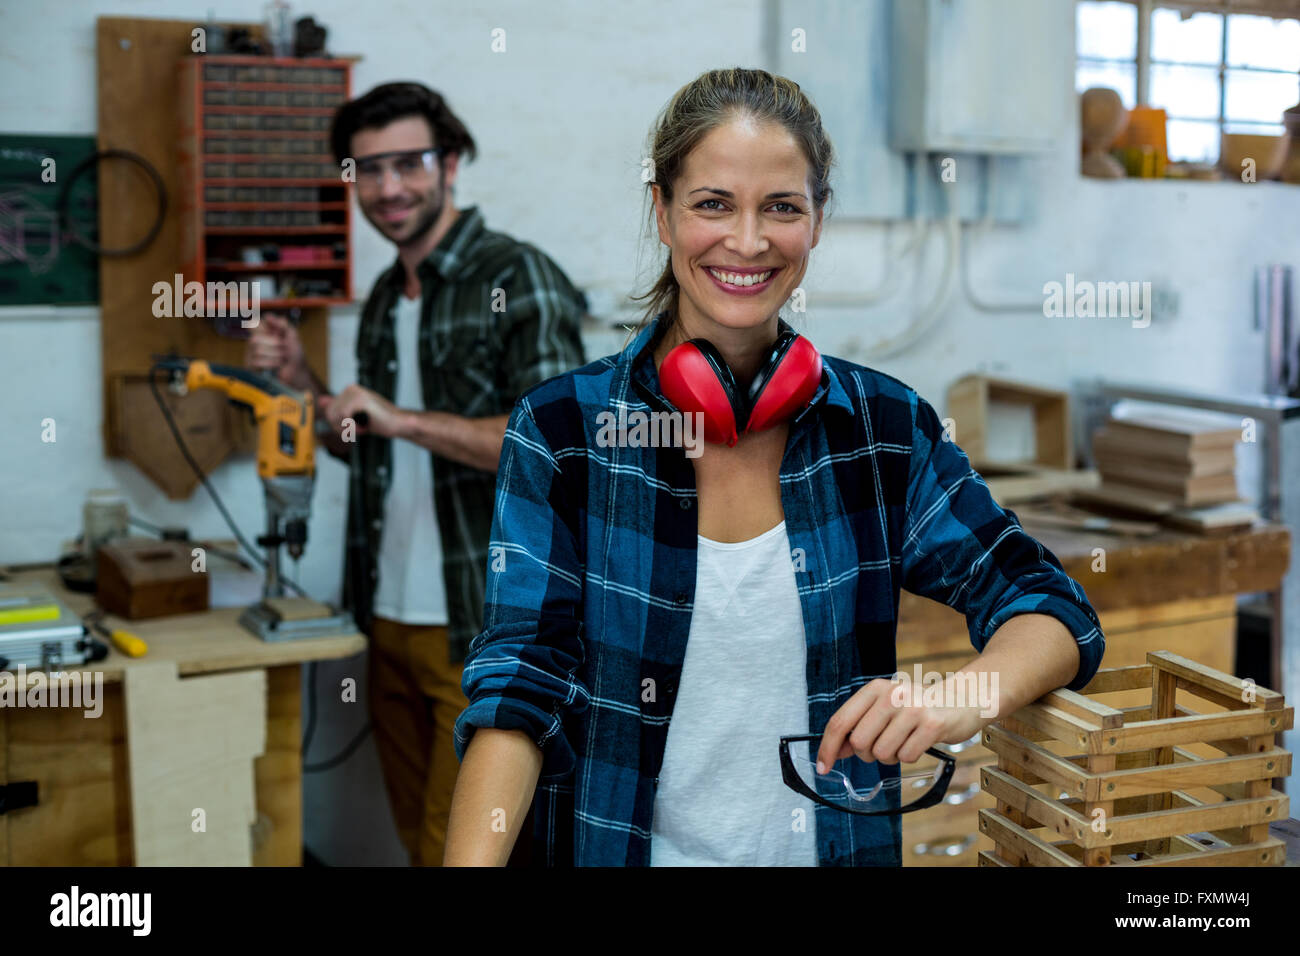 Homme et femme carpenter smiling in workshop Banque D'Images